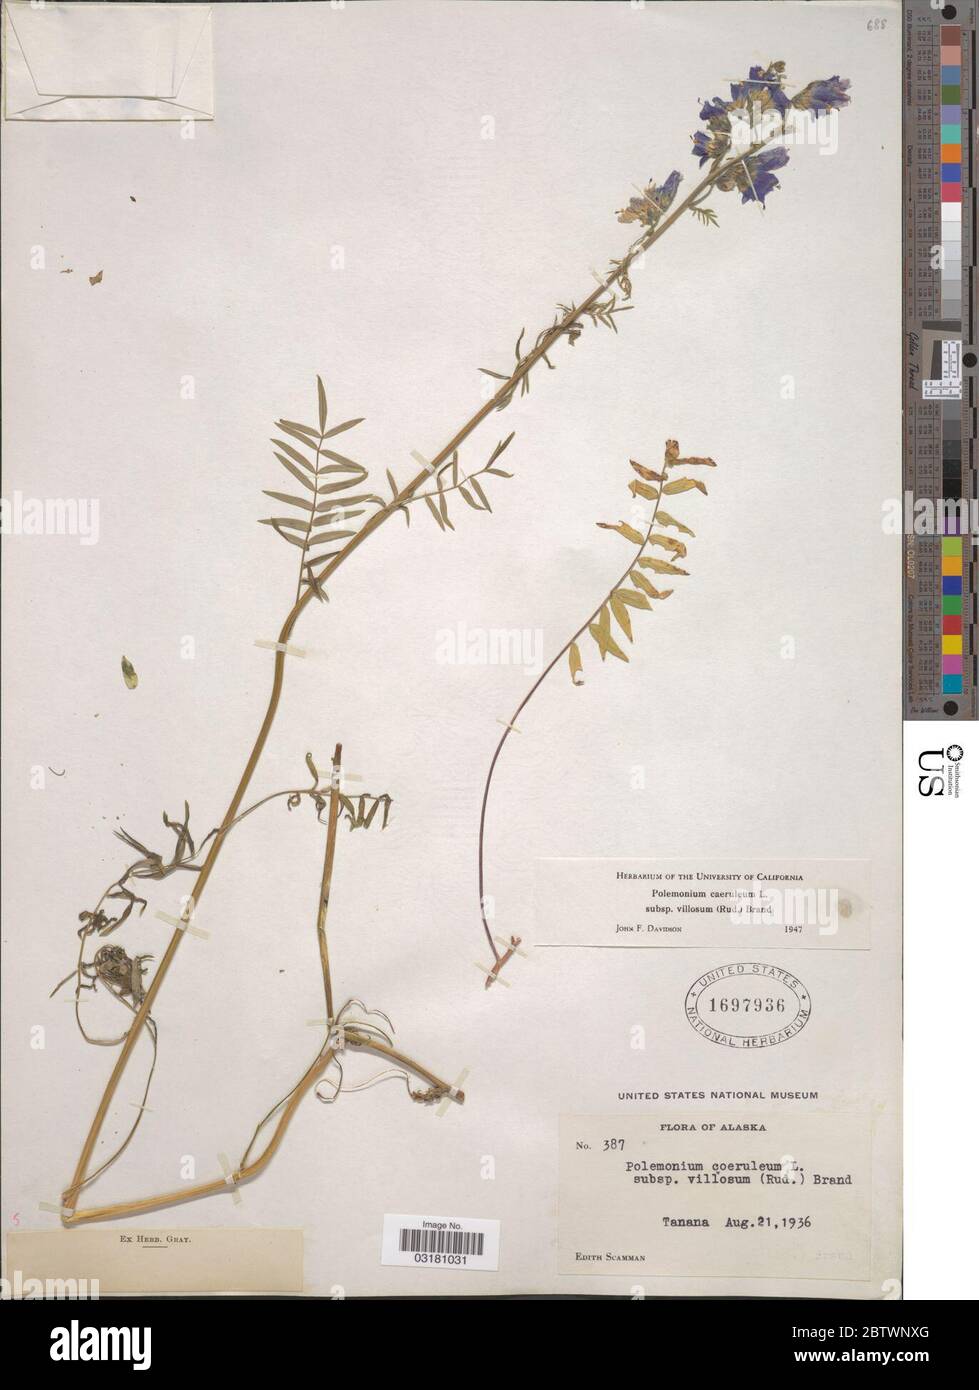 Polemonium caeruleum subsp villosum Rudolph ex Georgi Brand. Stock Photo